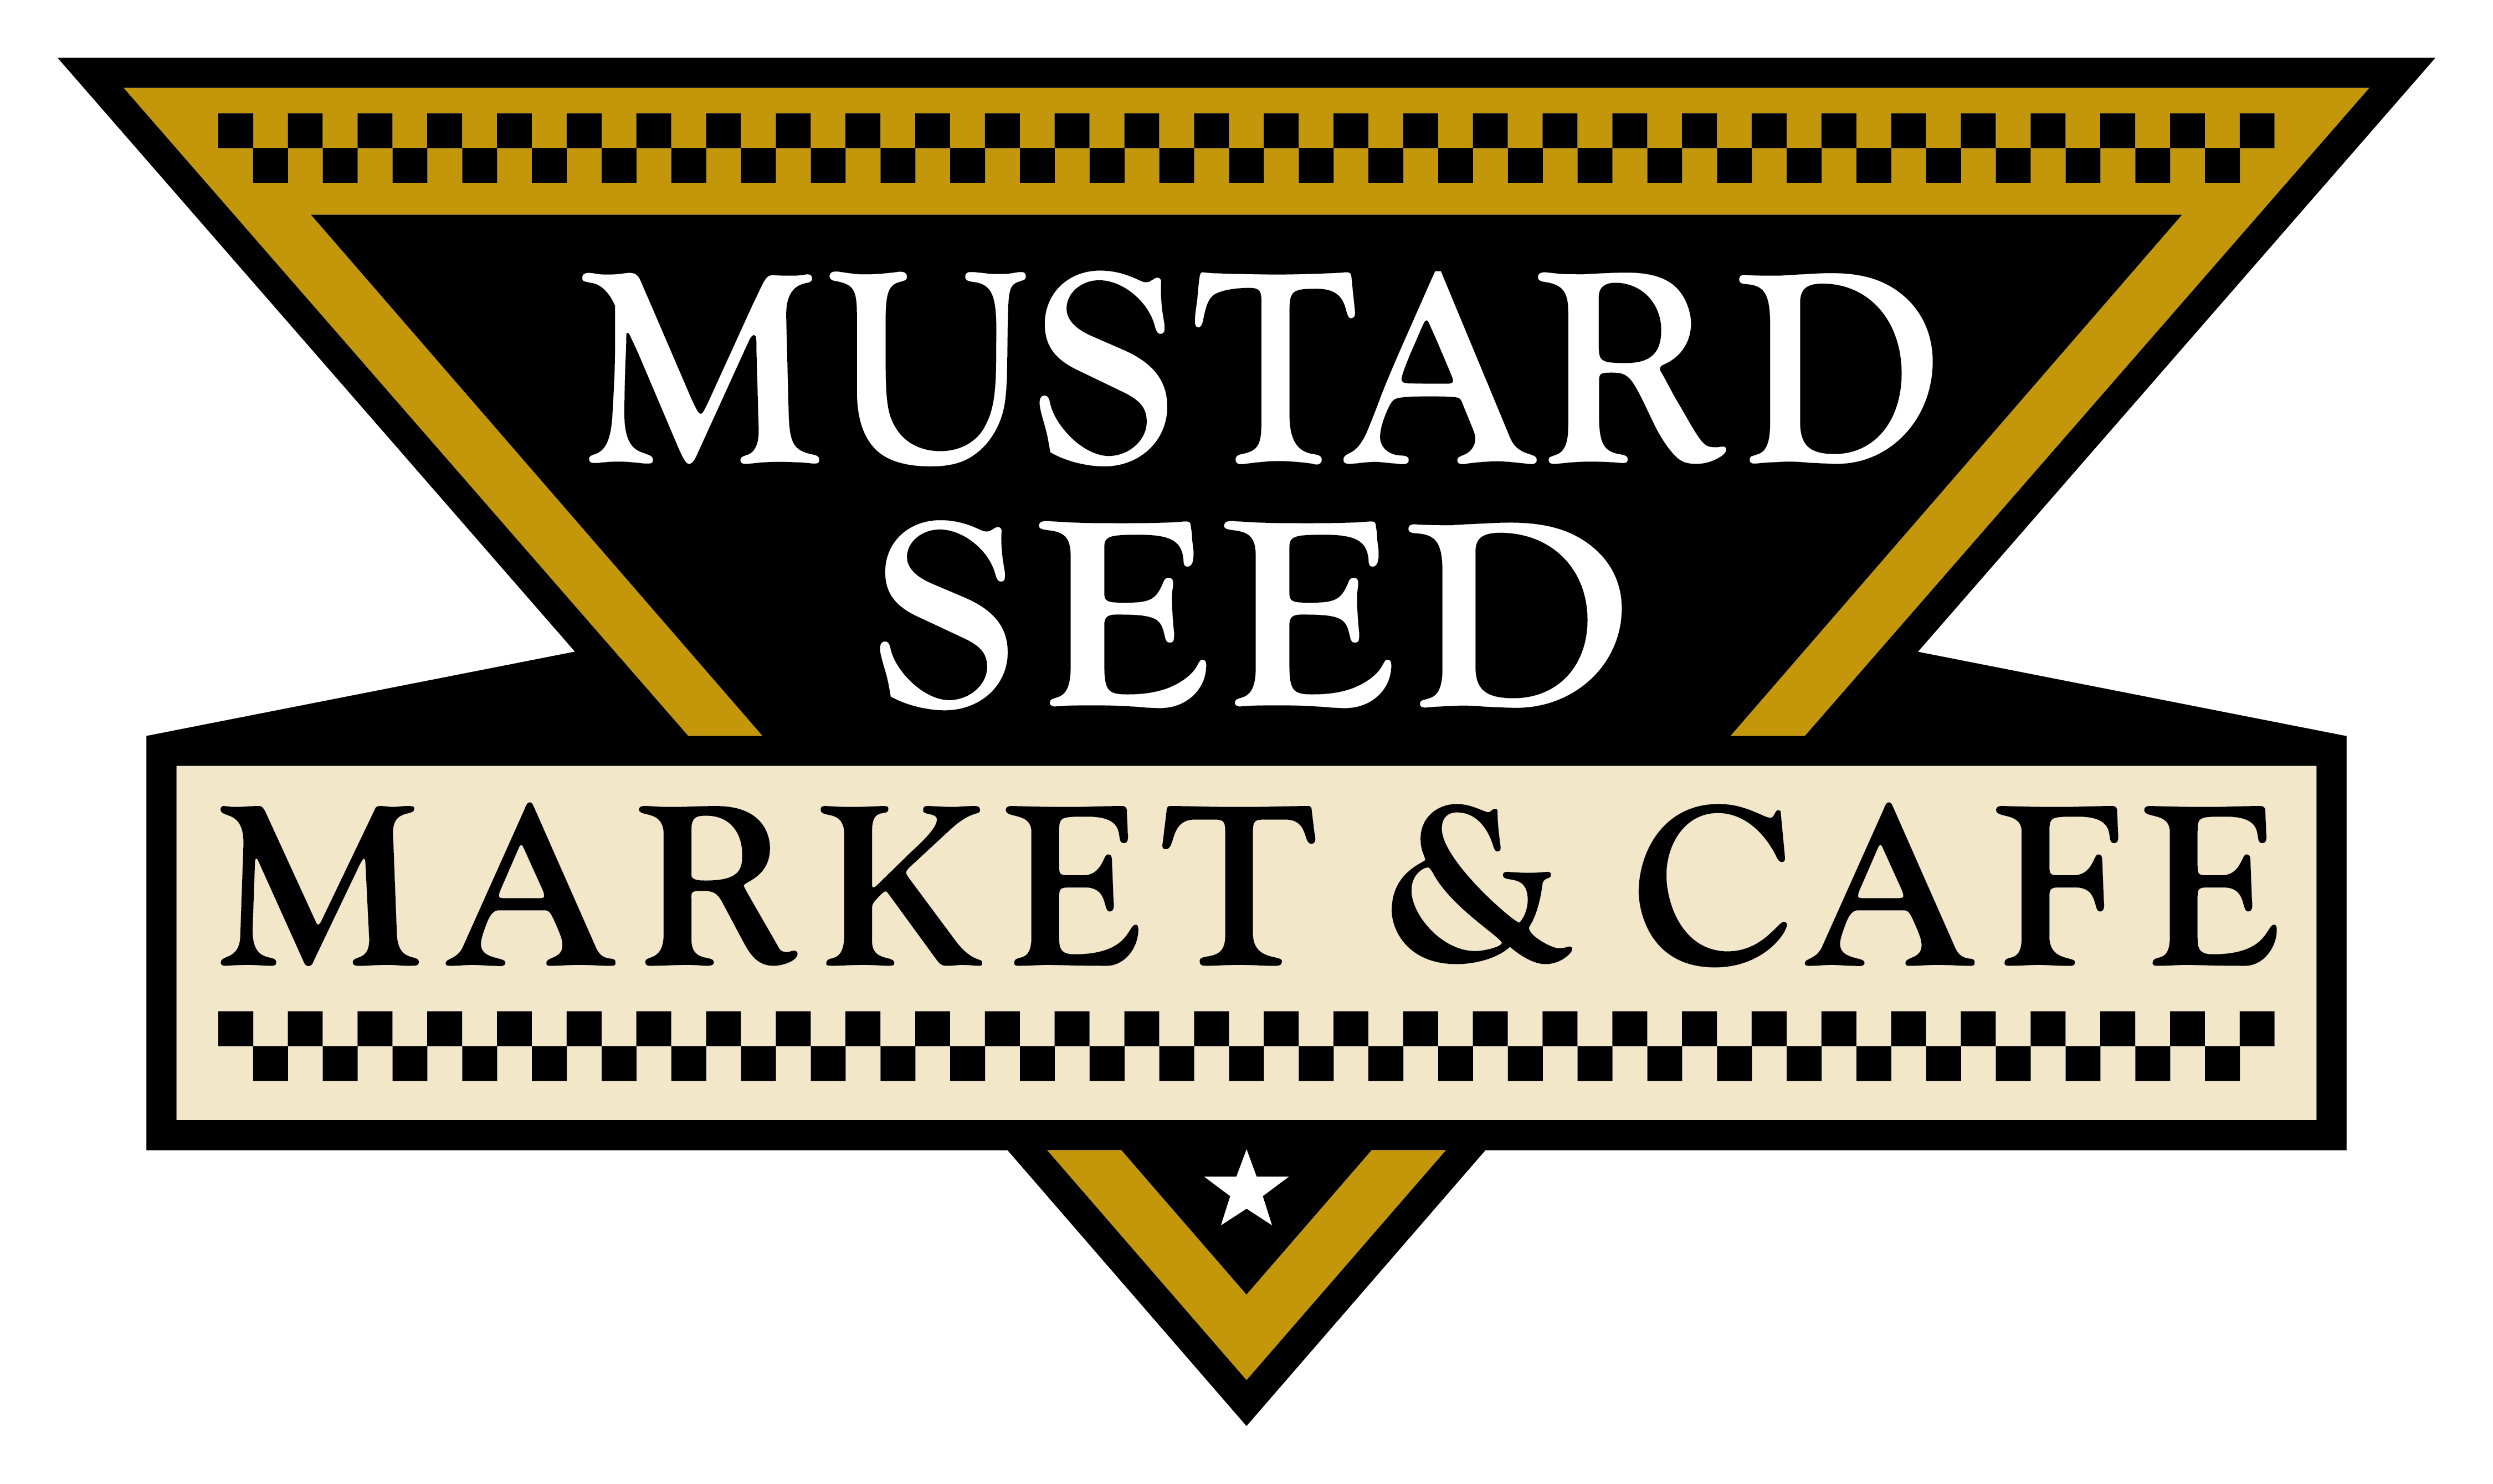 Mustard Seed Market & Café